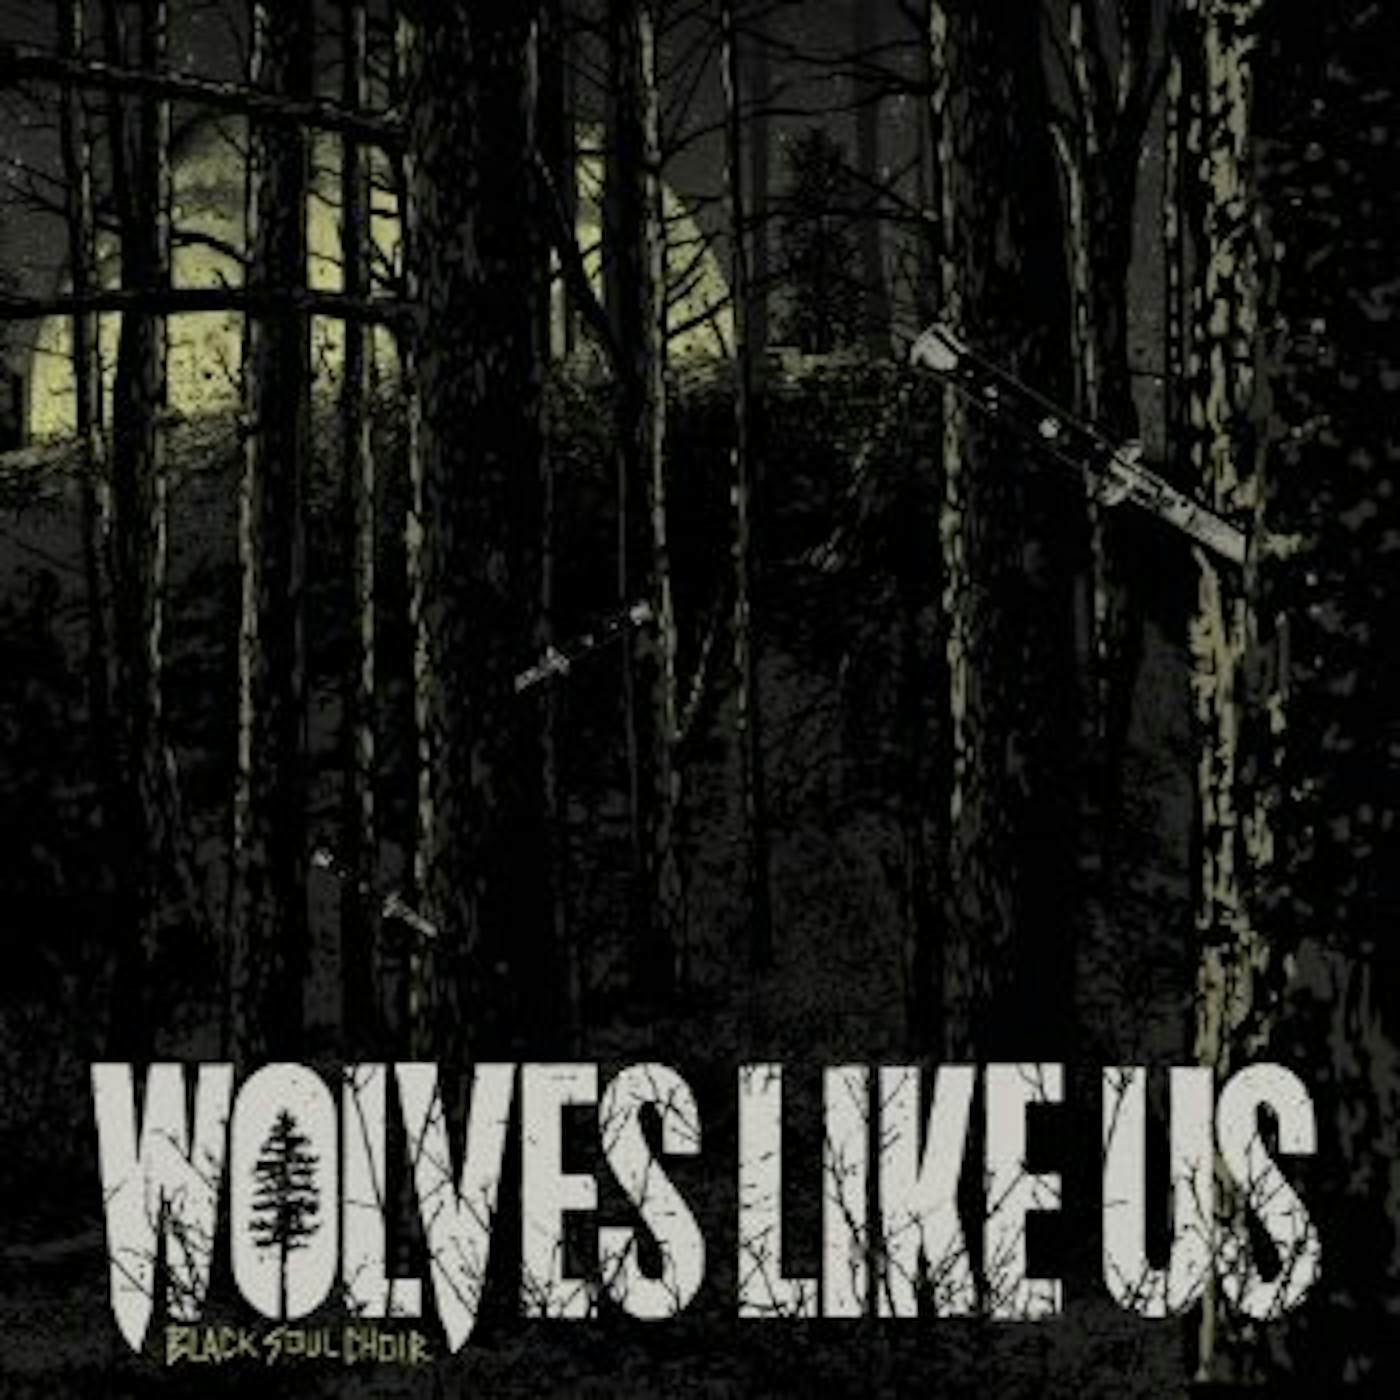 Wolves Like Us BLACK SOUL CHOIR CD